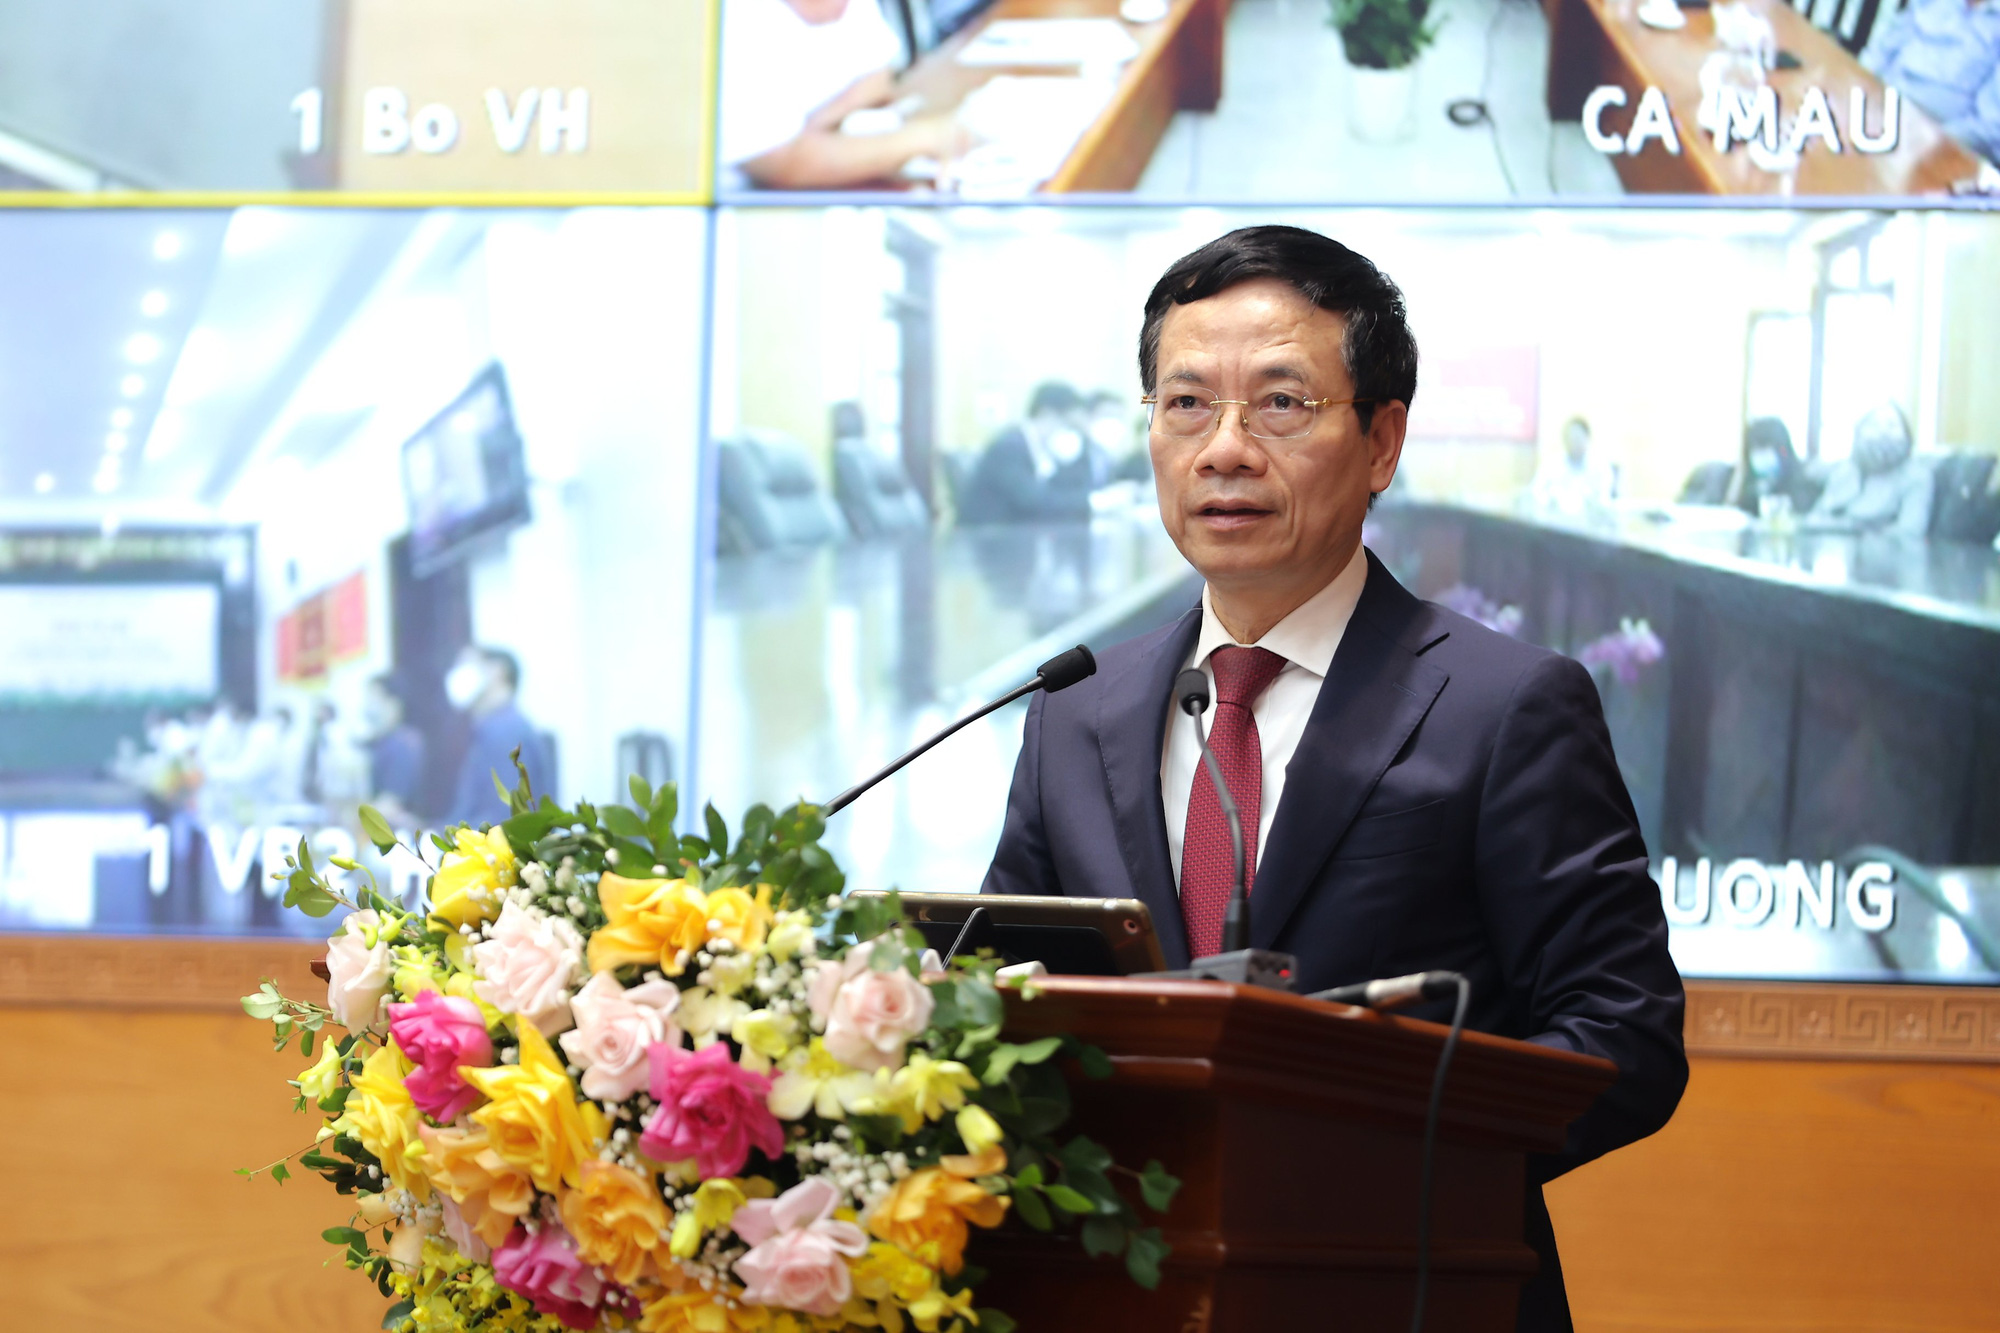 Phó Thủ tướng: “Phải tiếp tục phát huy được truyền thống văn hóa tốt đẹp của con người Việt Nam như lúc khó khăn, dịch bệnh” - Ảnh 3.